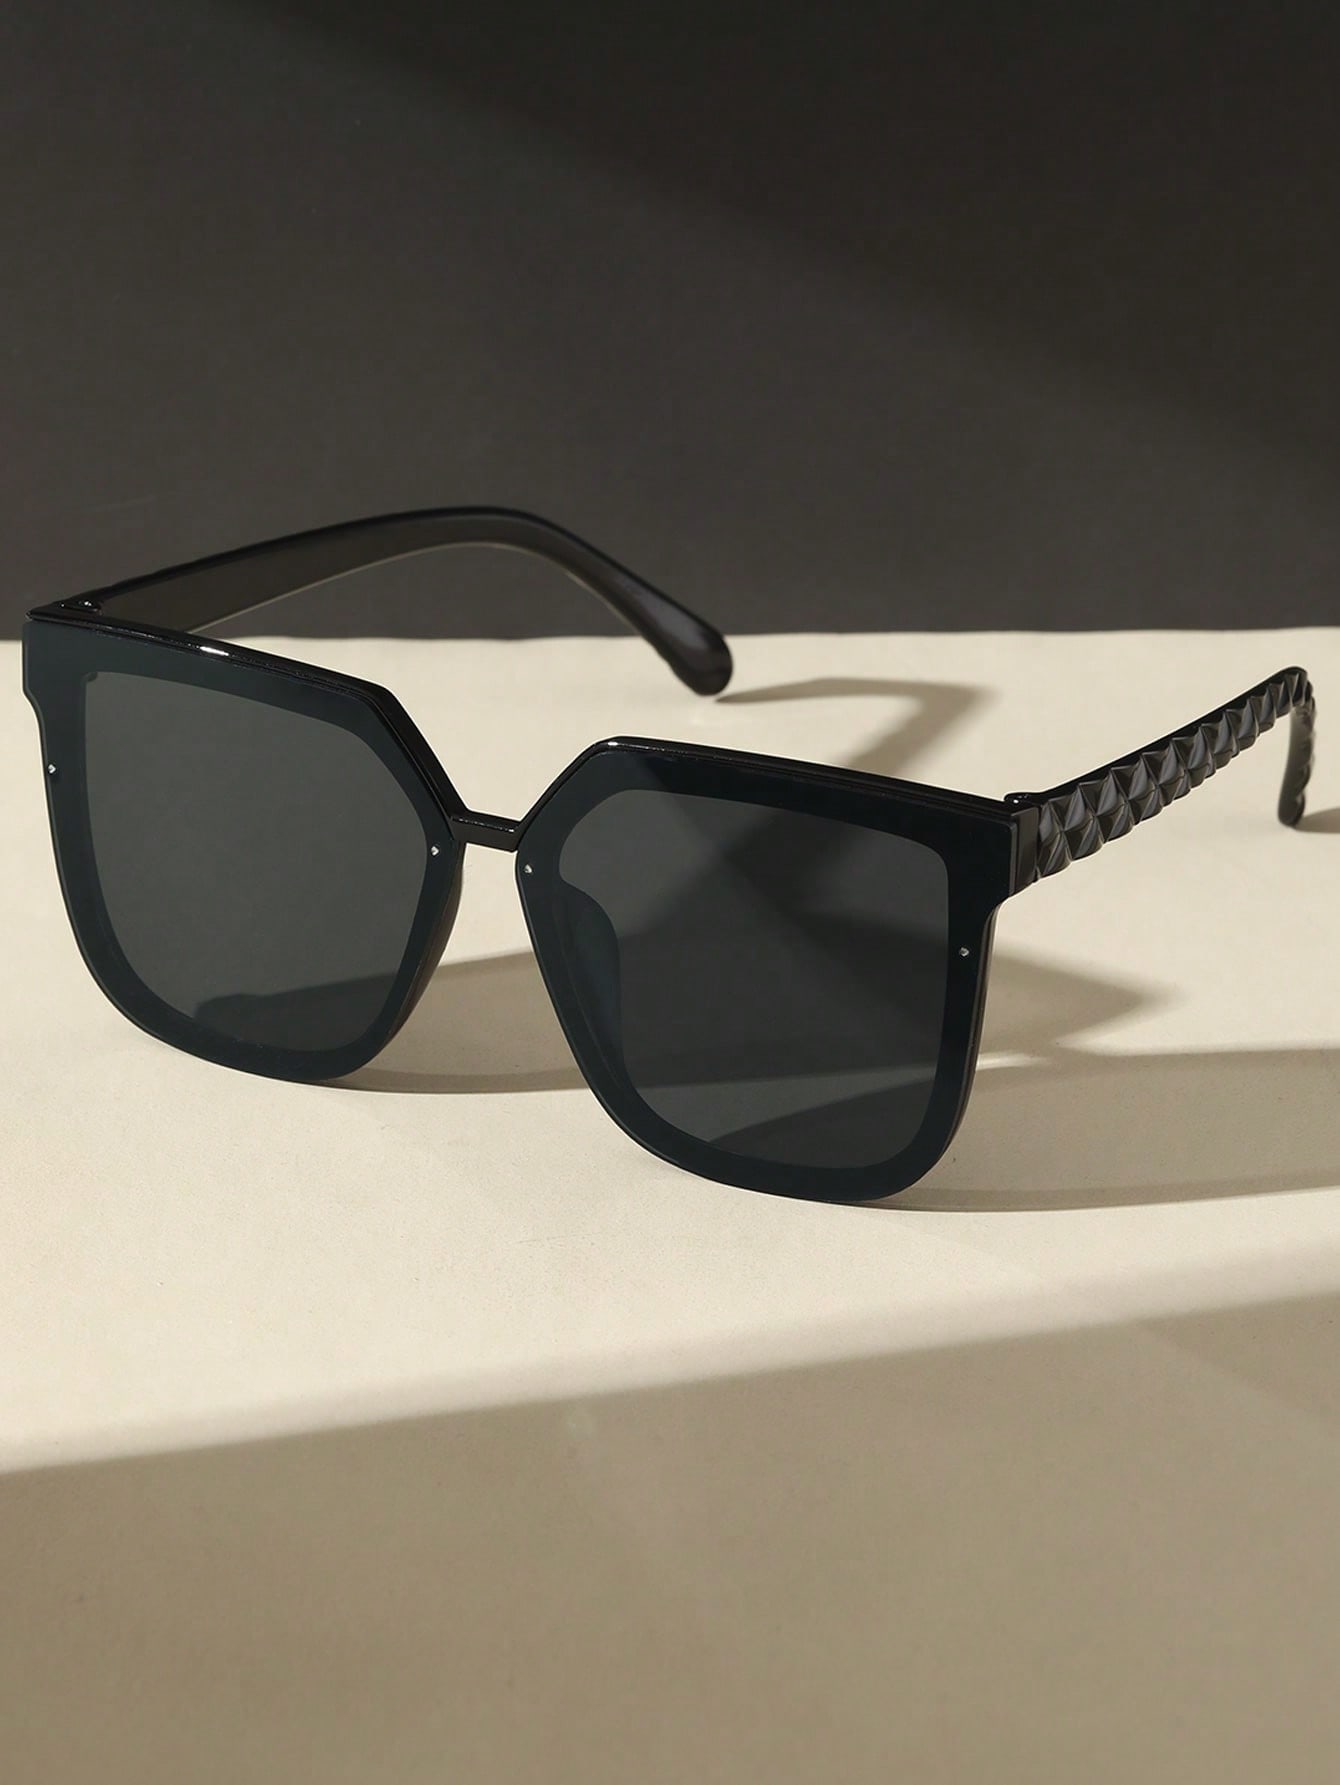 1 шт. женские квадратные пластиковые индивидуальные солнцезащитные очки в стиле бохо для вождения фото